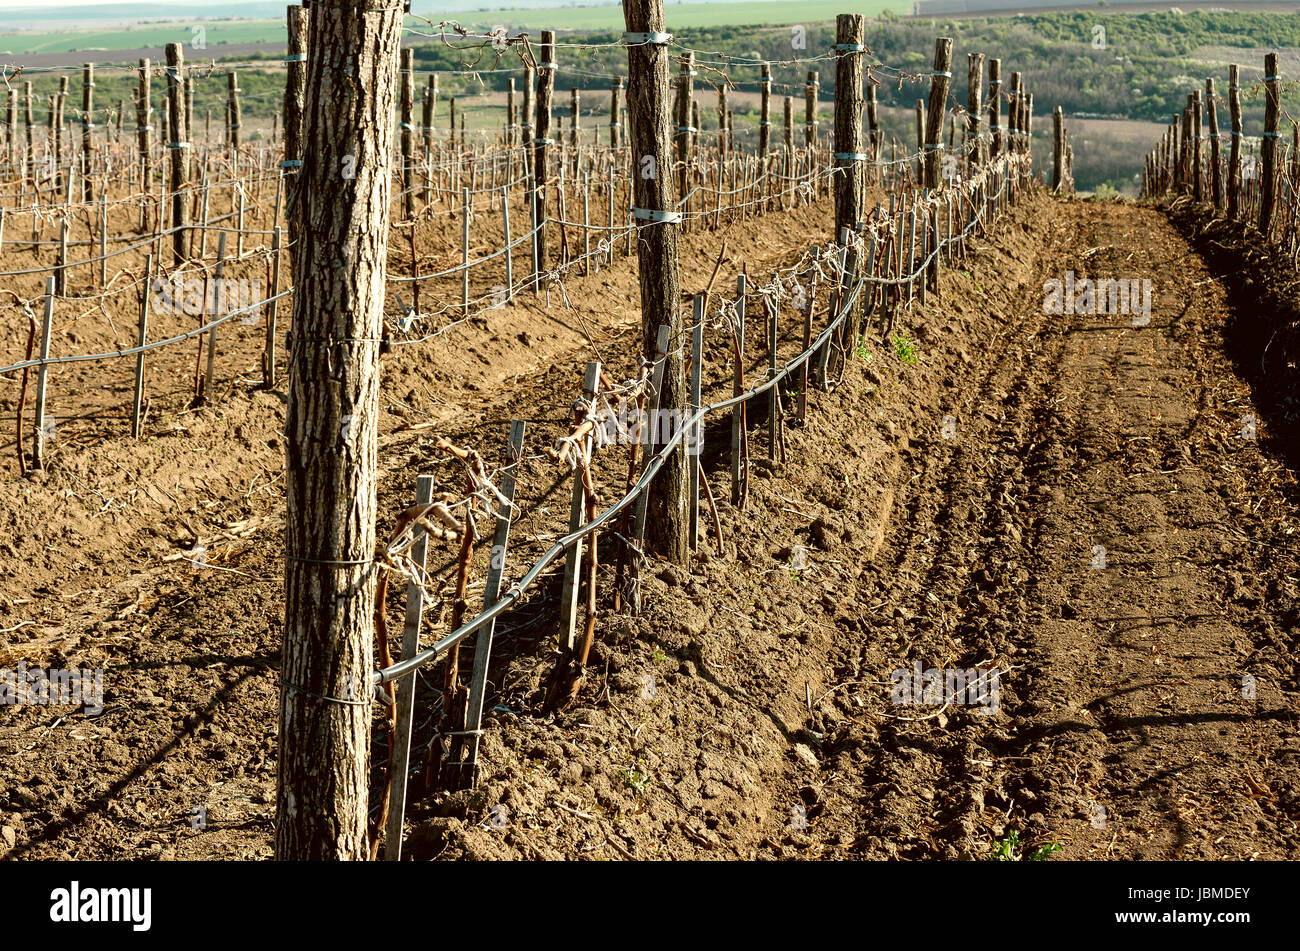 Wine vineyards in spring Stock Photo